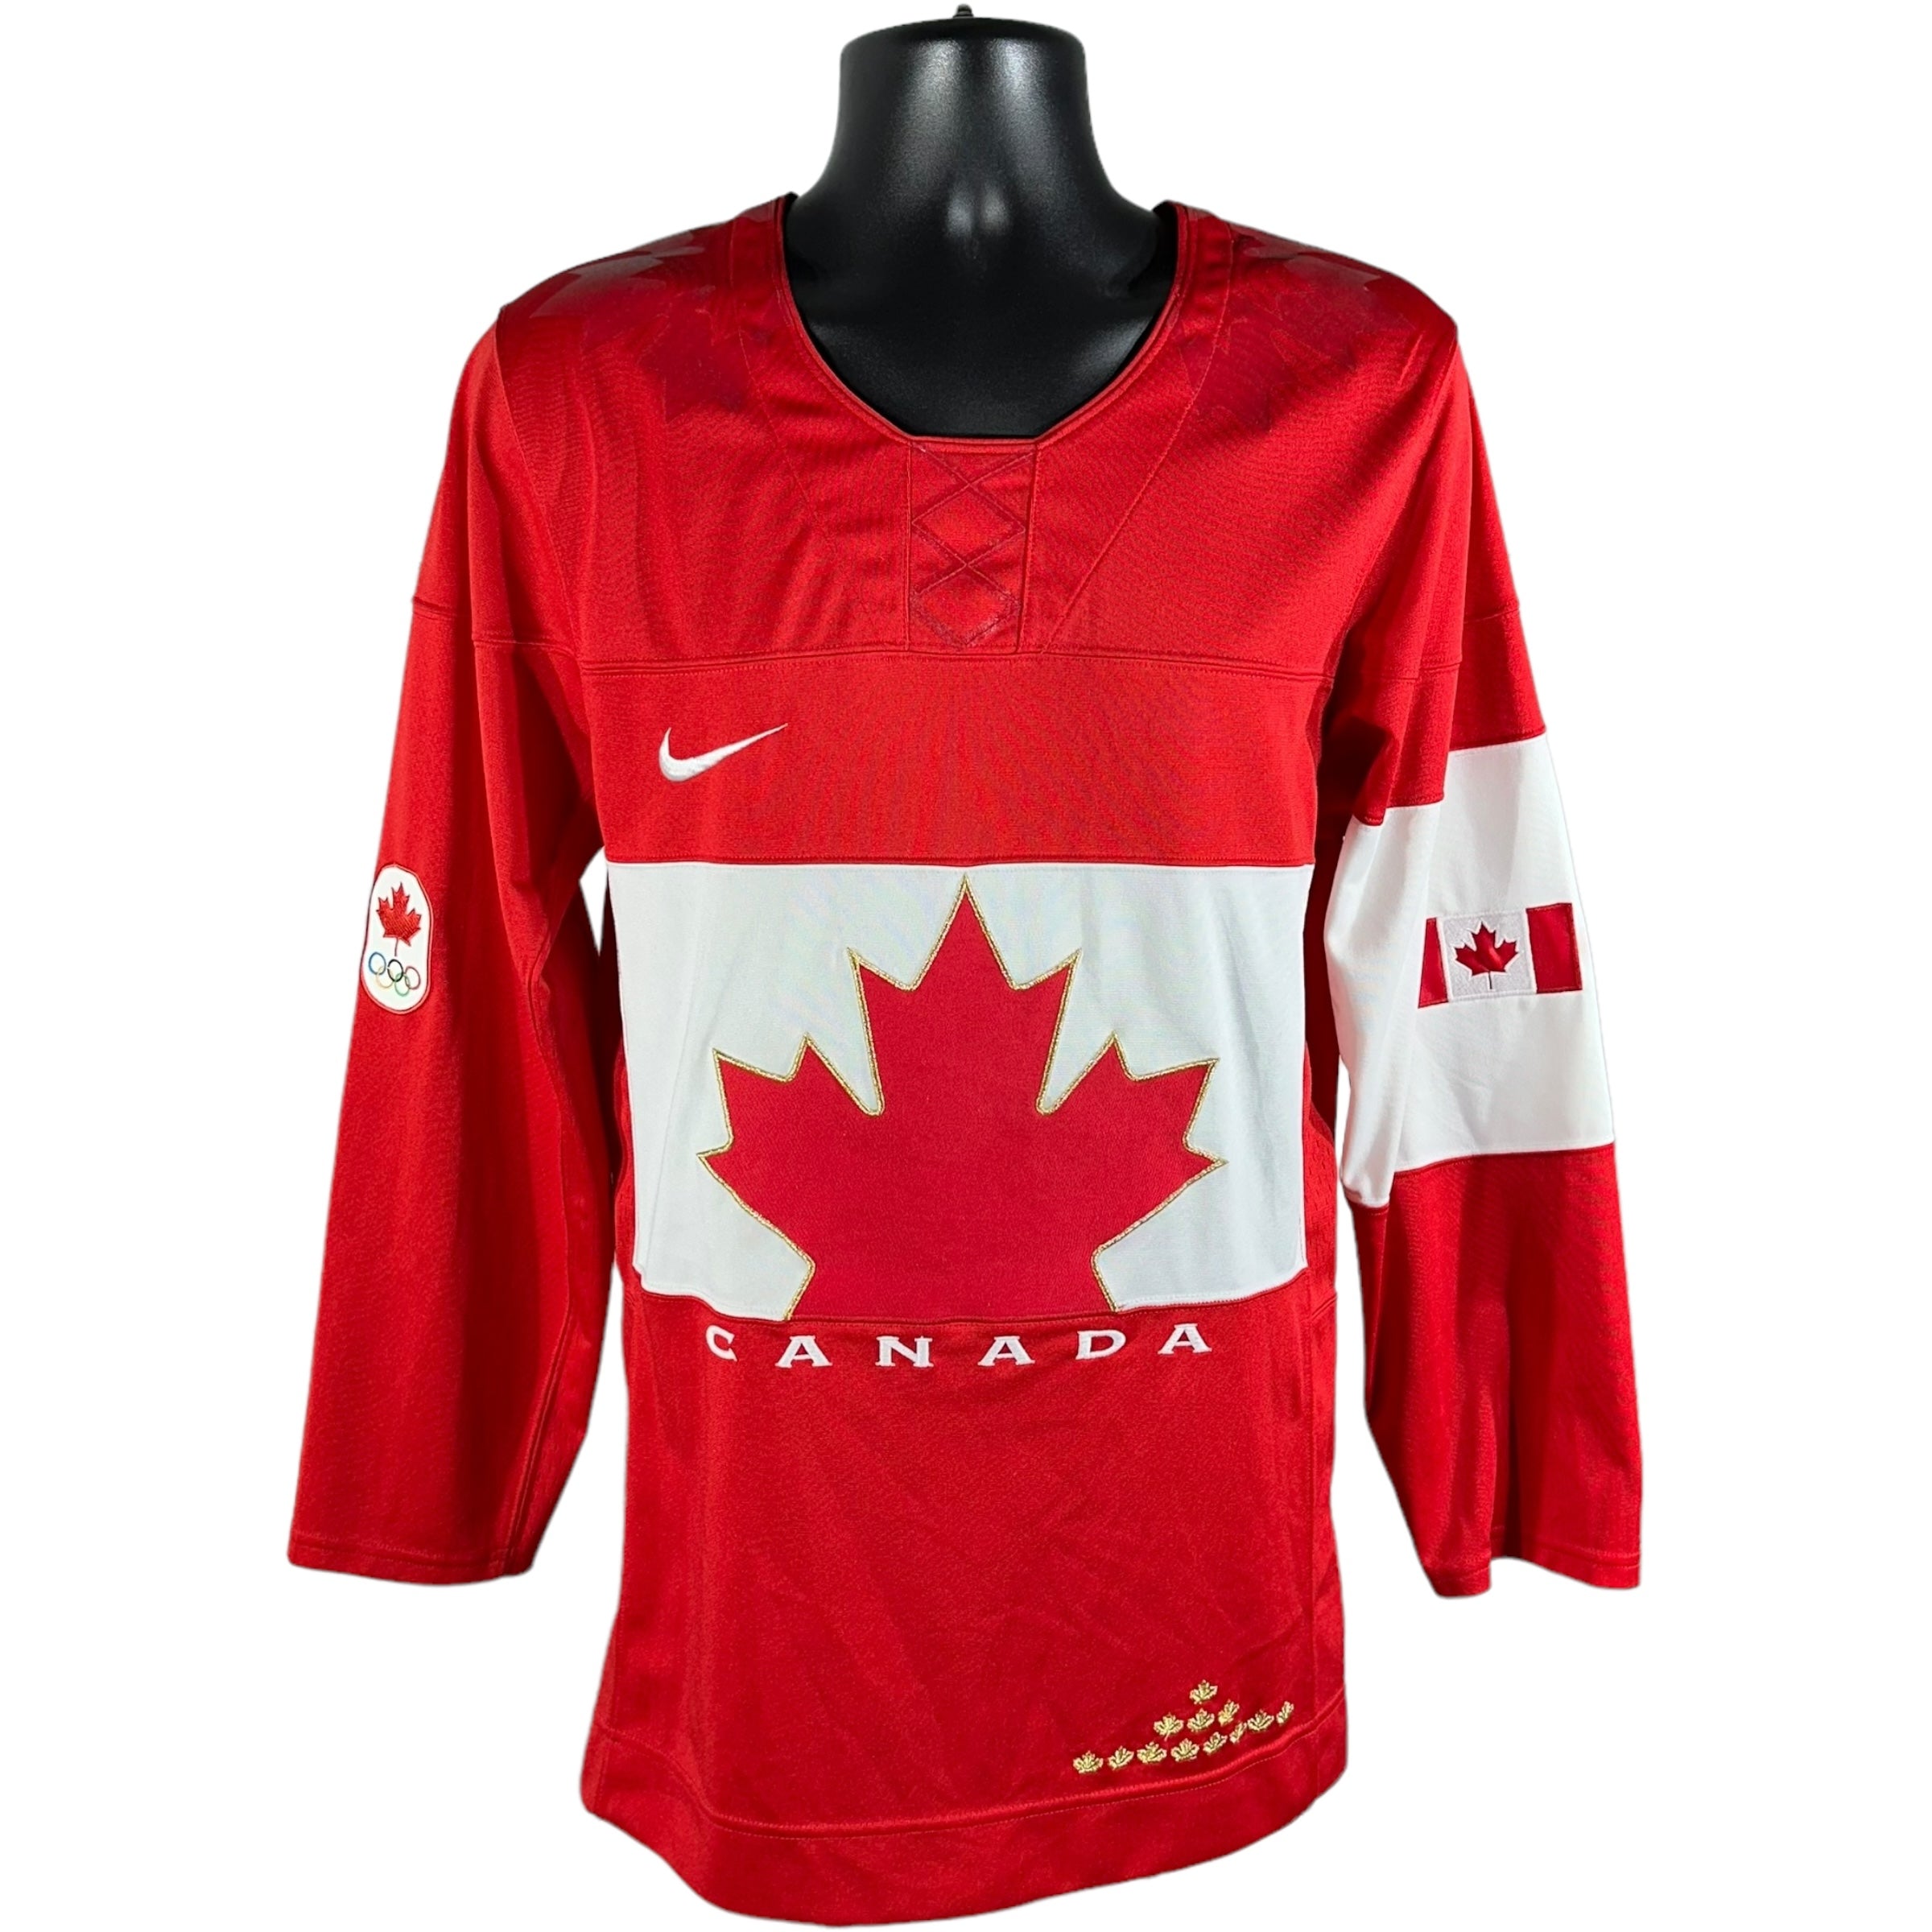 Vintage Nike Canada Olympics Hockey Jersey